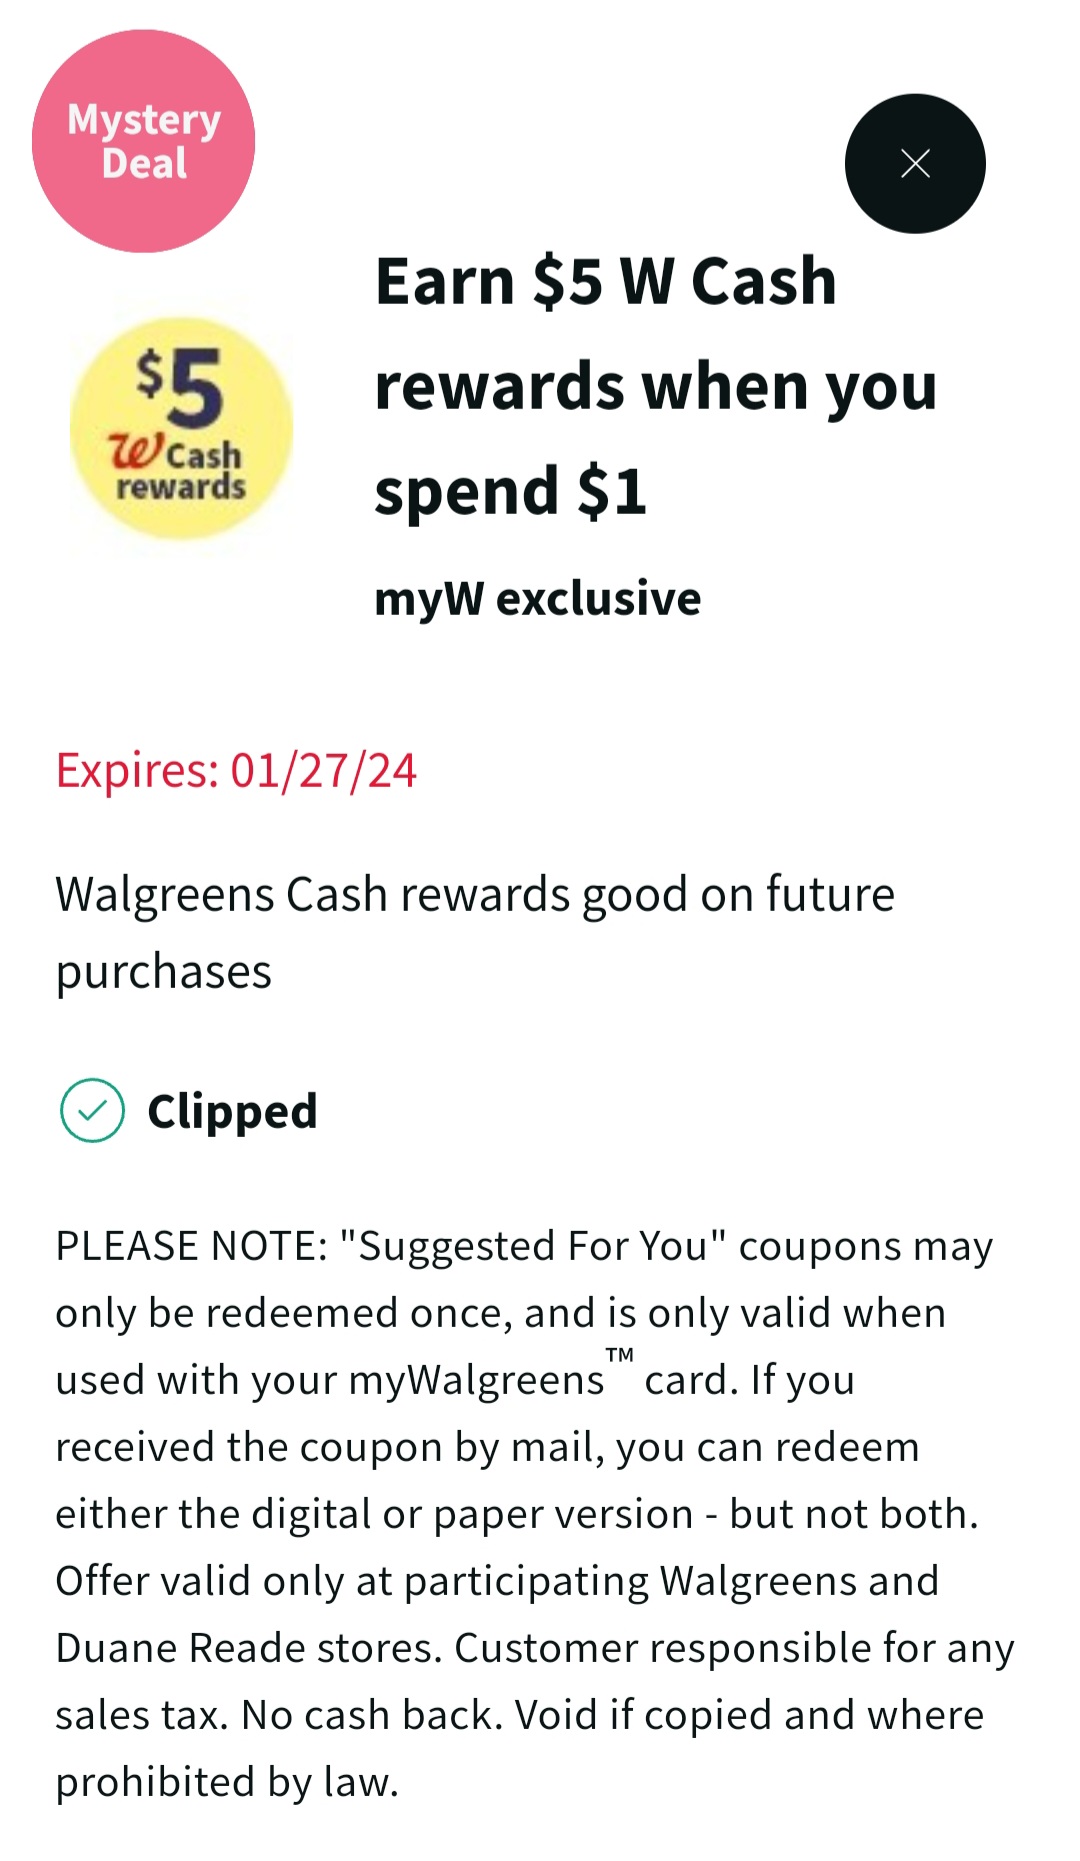 买任何东西价值$1或以上得$5 Walgreens cash rewards